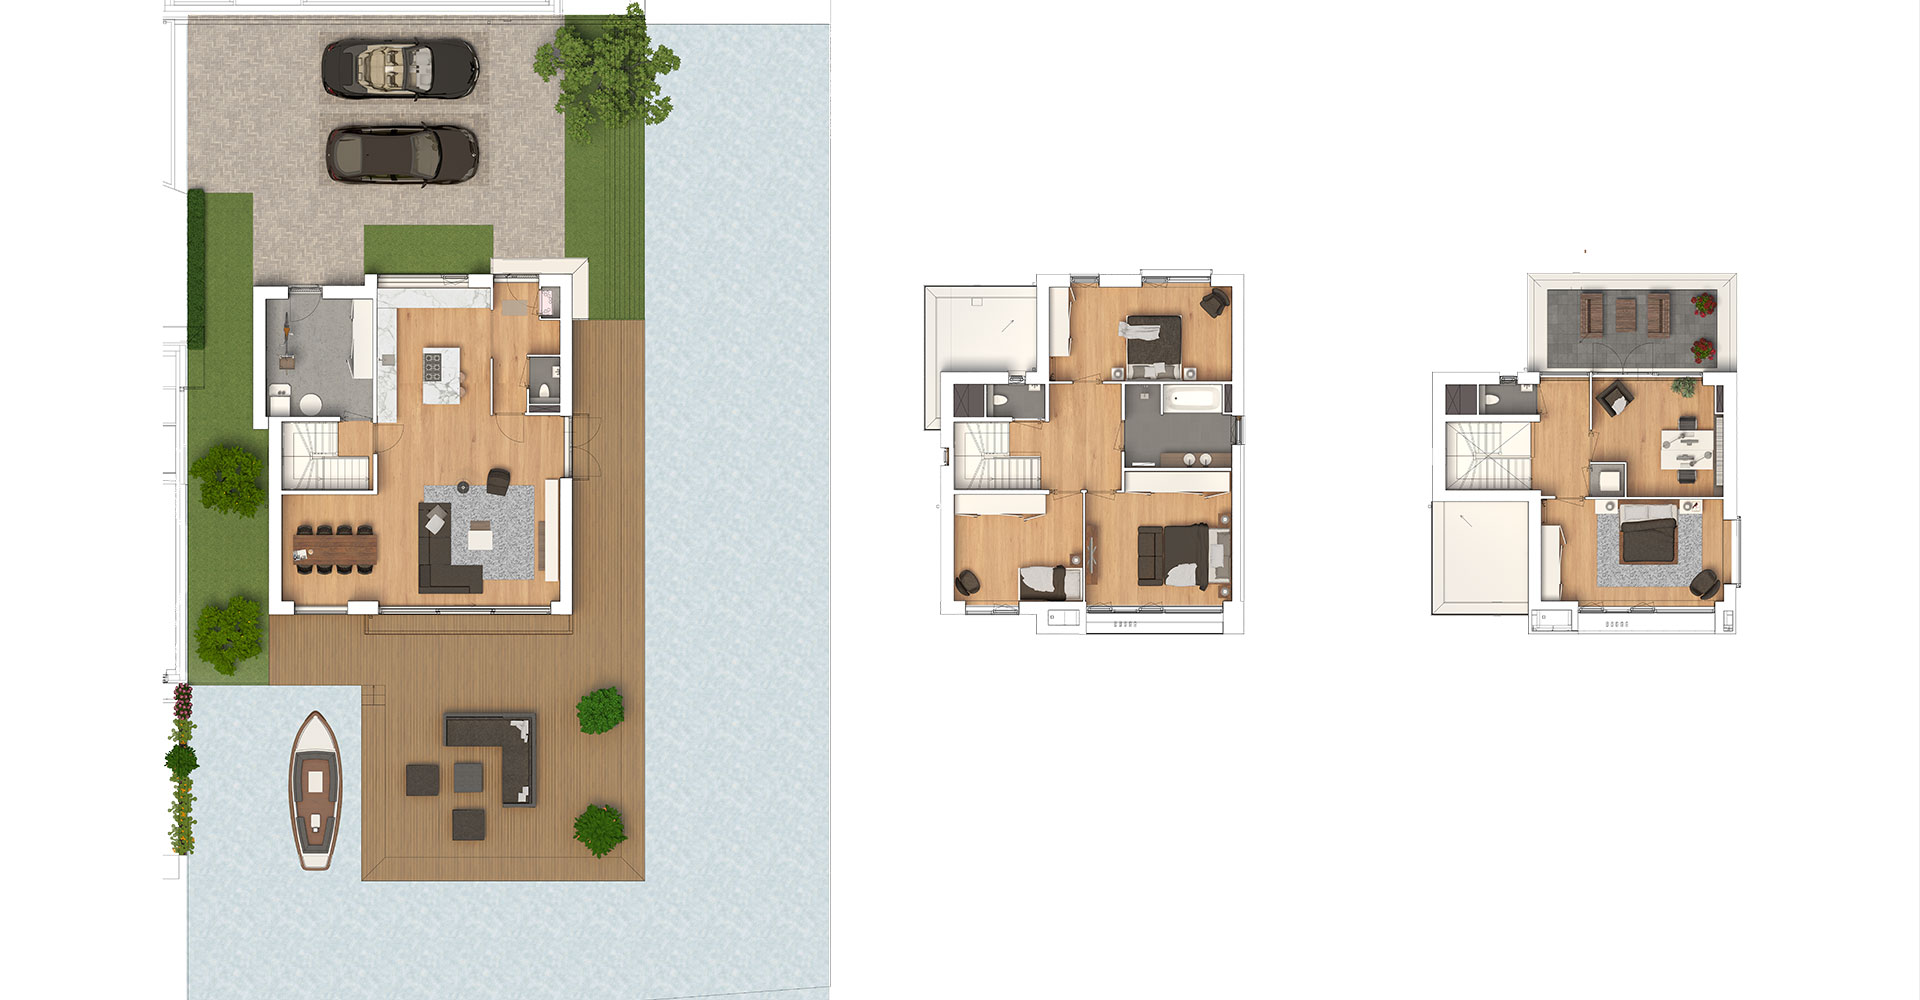 Toba architecten Oude Tol fase 3 in Reeuwijk nieuwbouw woonwijk havenwoningen plattegrond vrijstaande villa